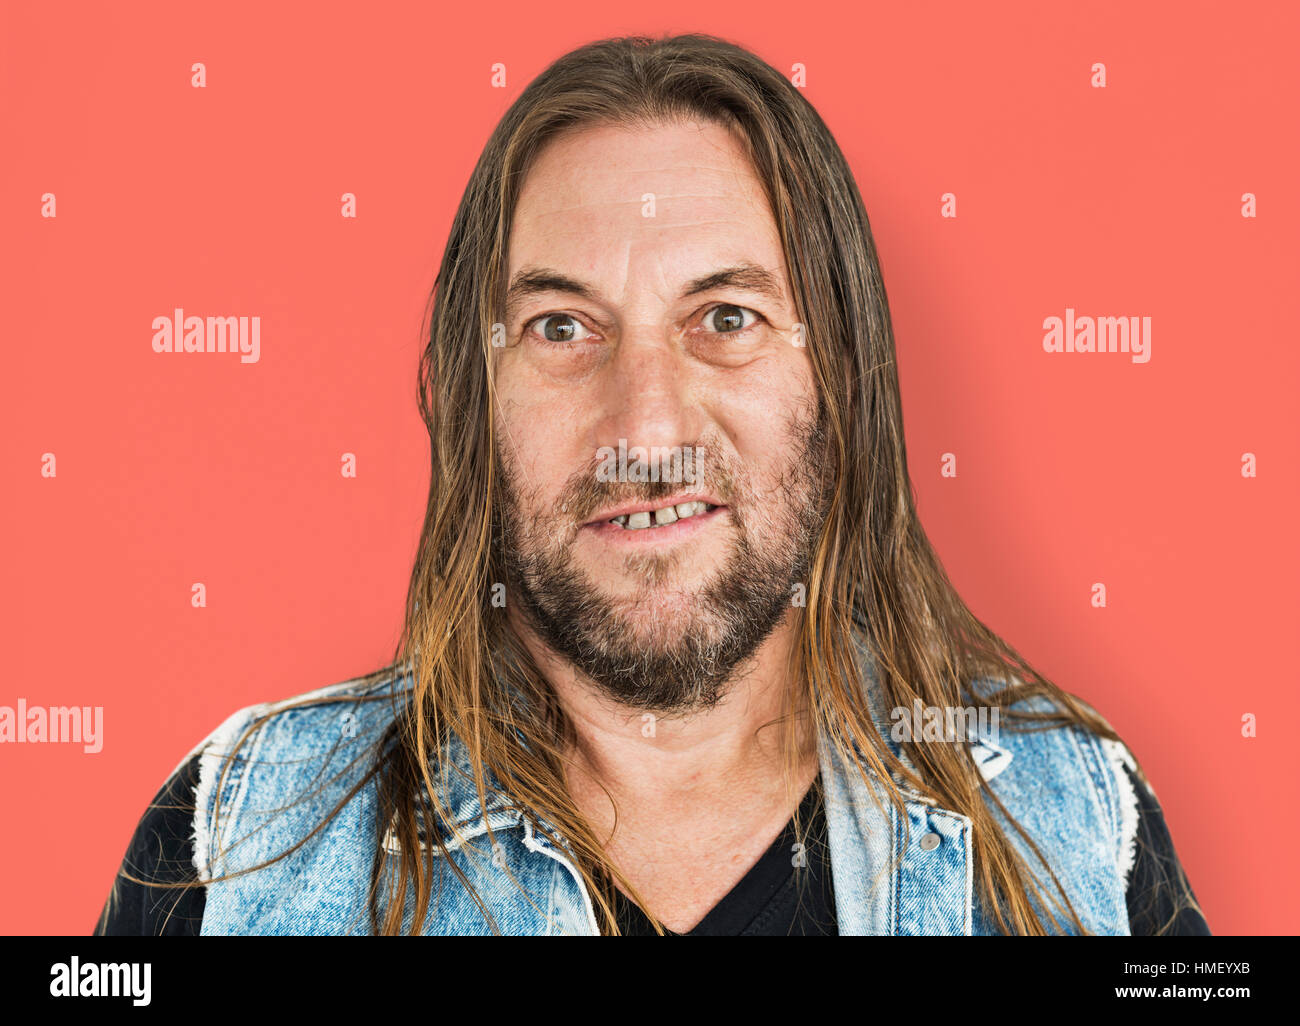 Mann lange Haare Frisur lächelnd Hohn Porträt Konzept Stockfoto